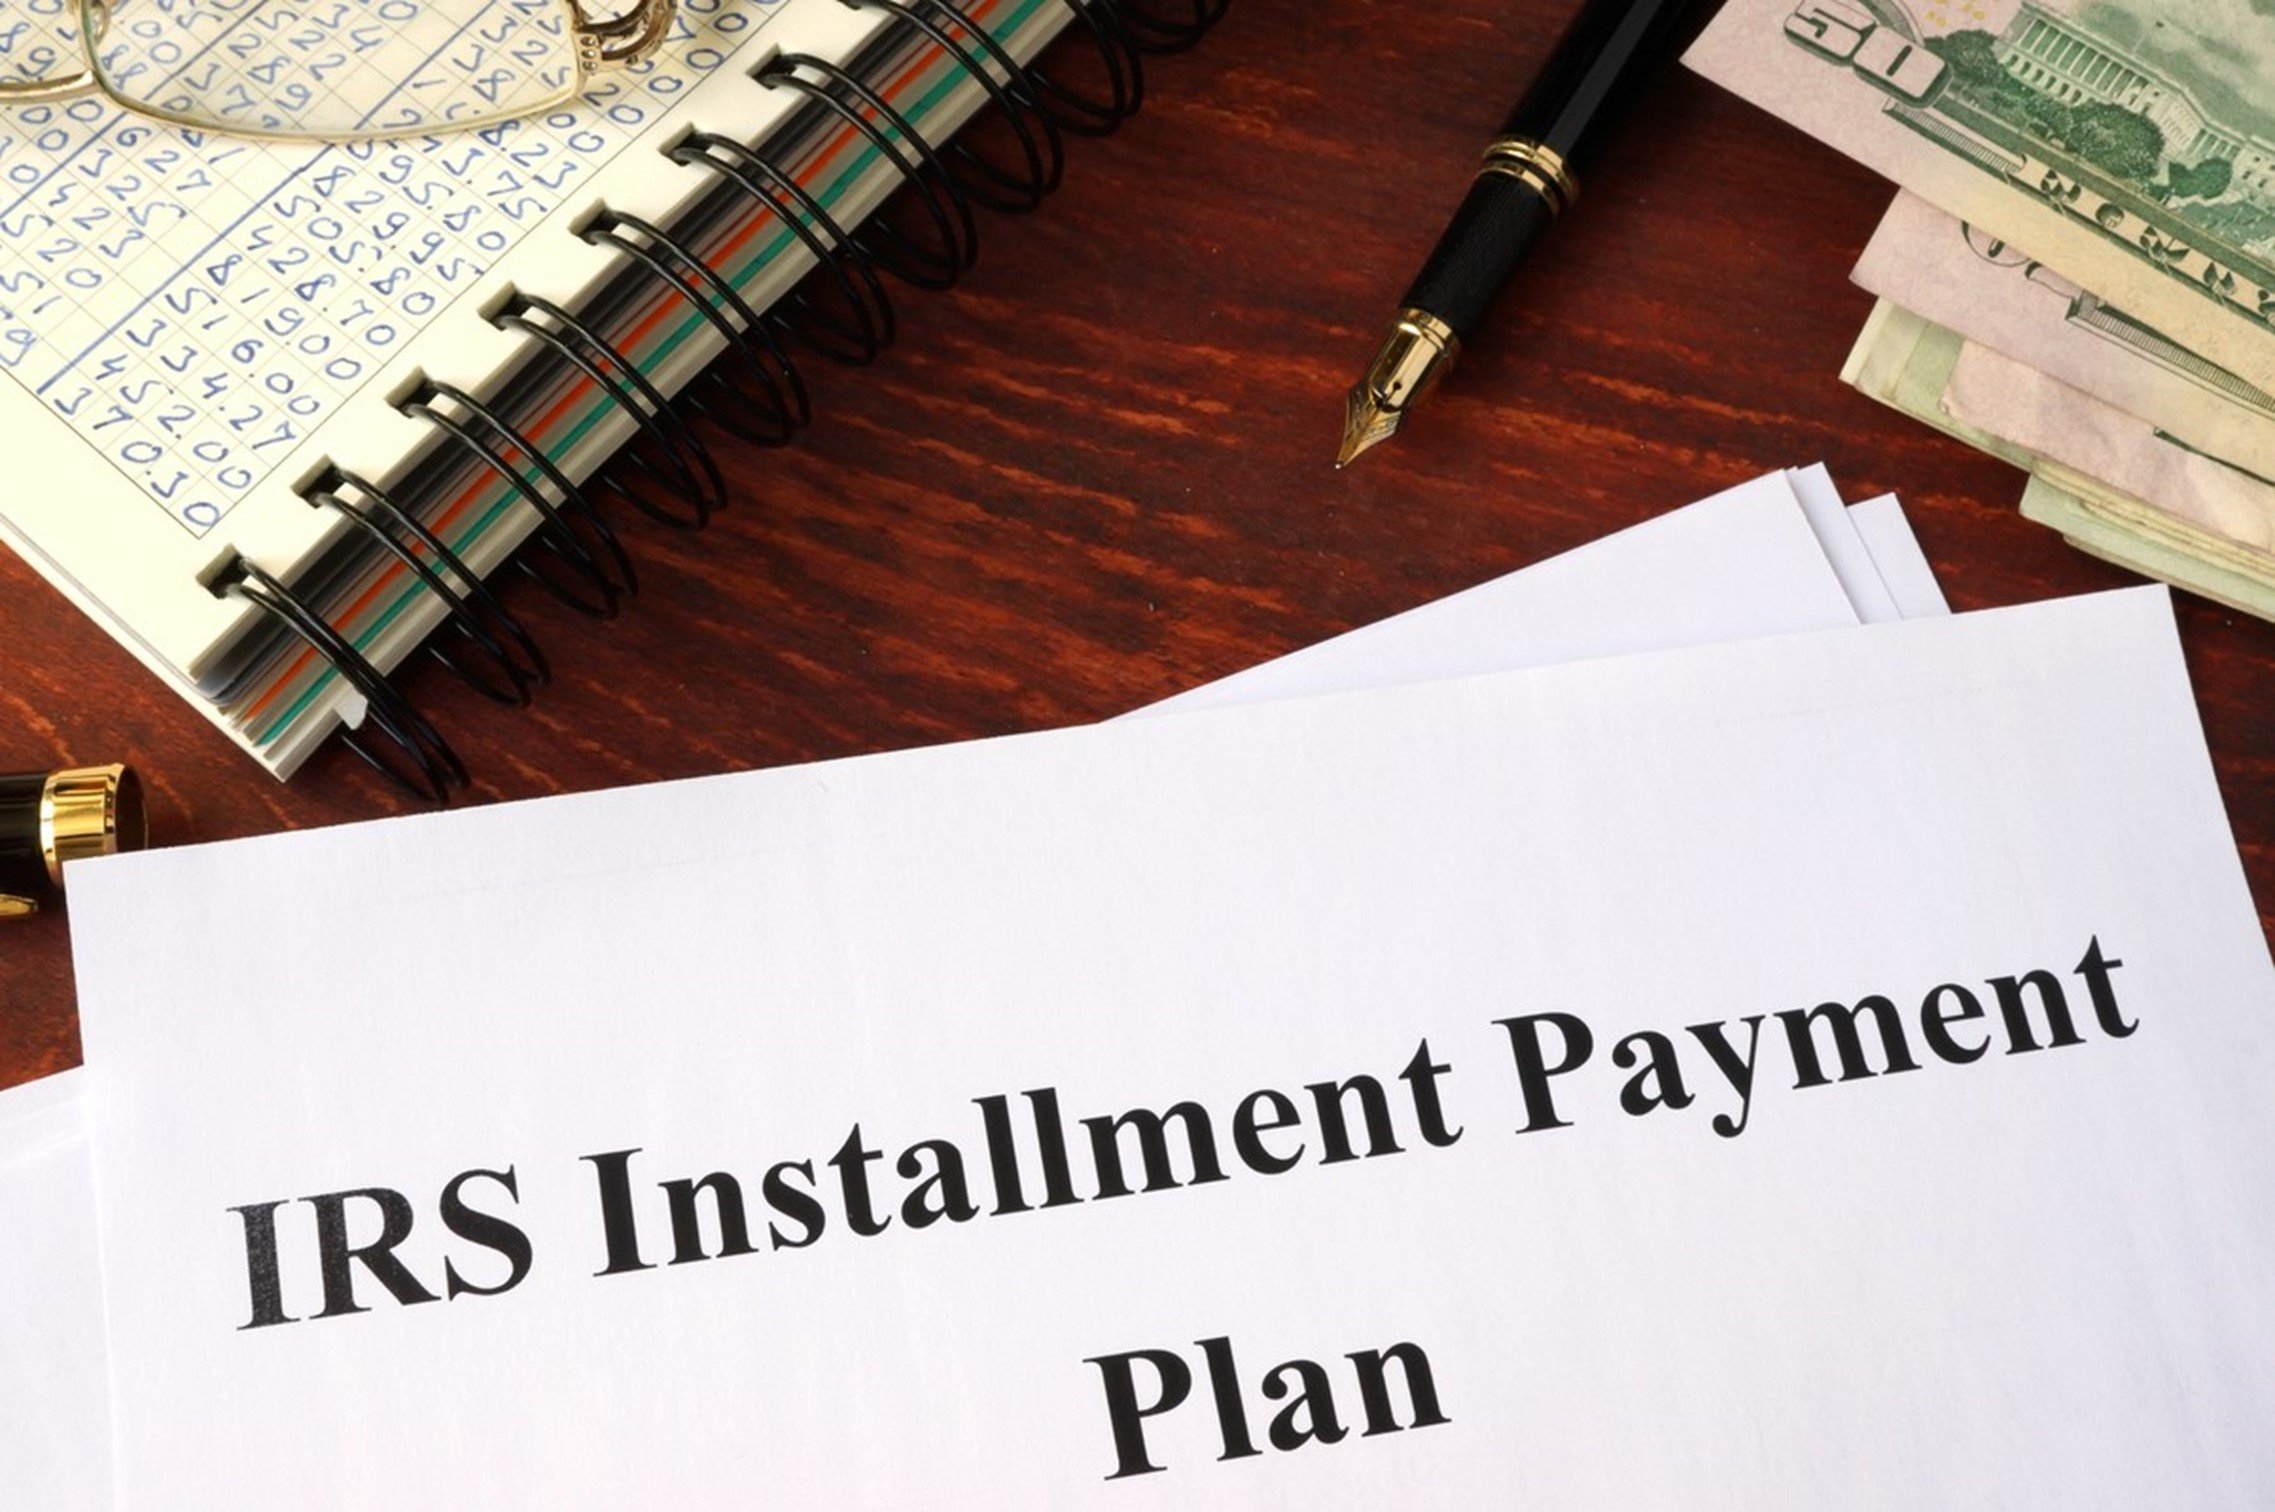 IRS Installment Payment Plan